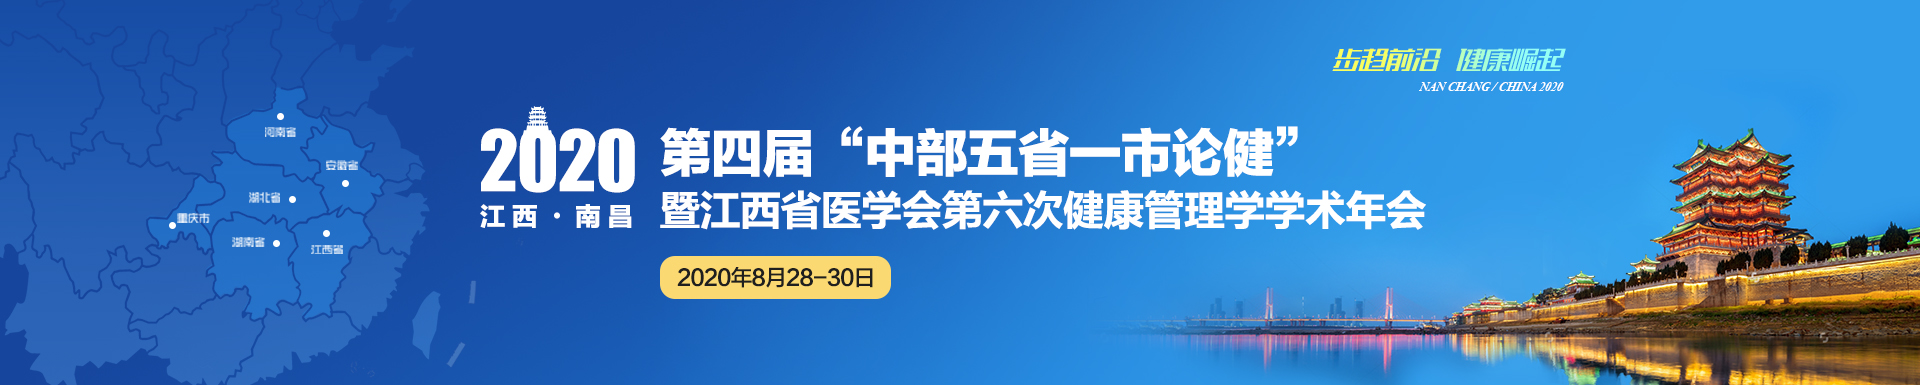 2020第四届“中部五省一市论健” 暨江西省医学会第六次健康管理学学术年会